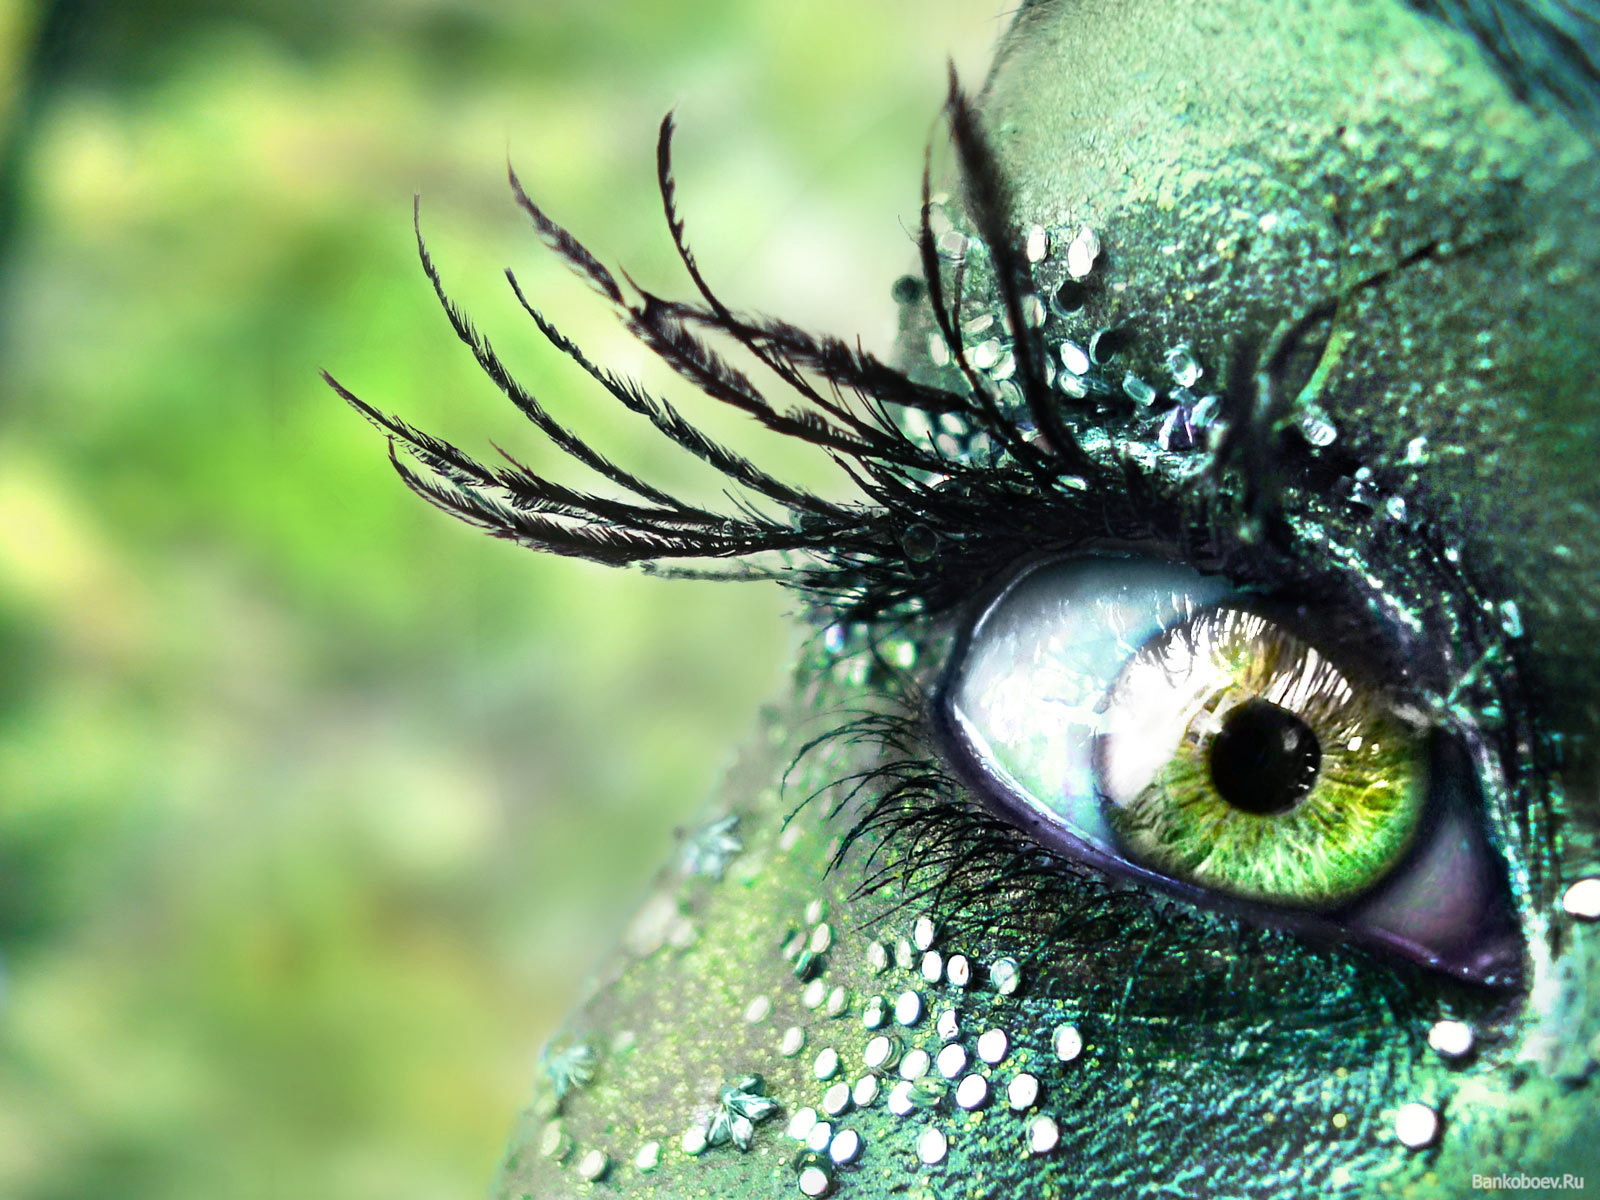 Greencolour eye photos